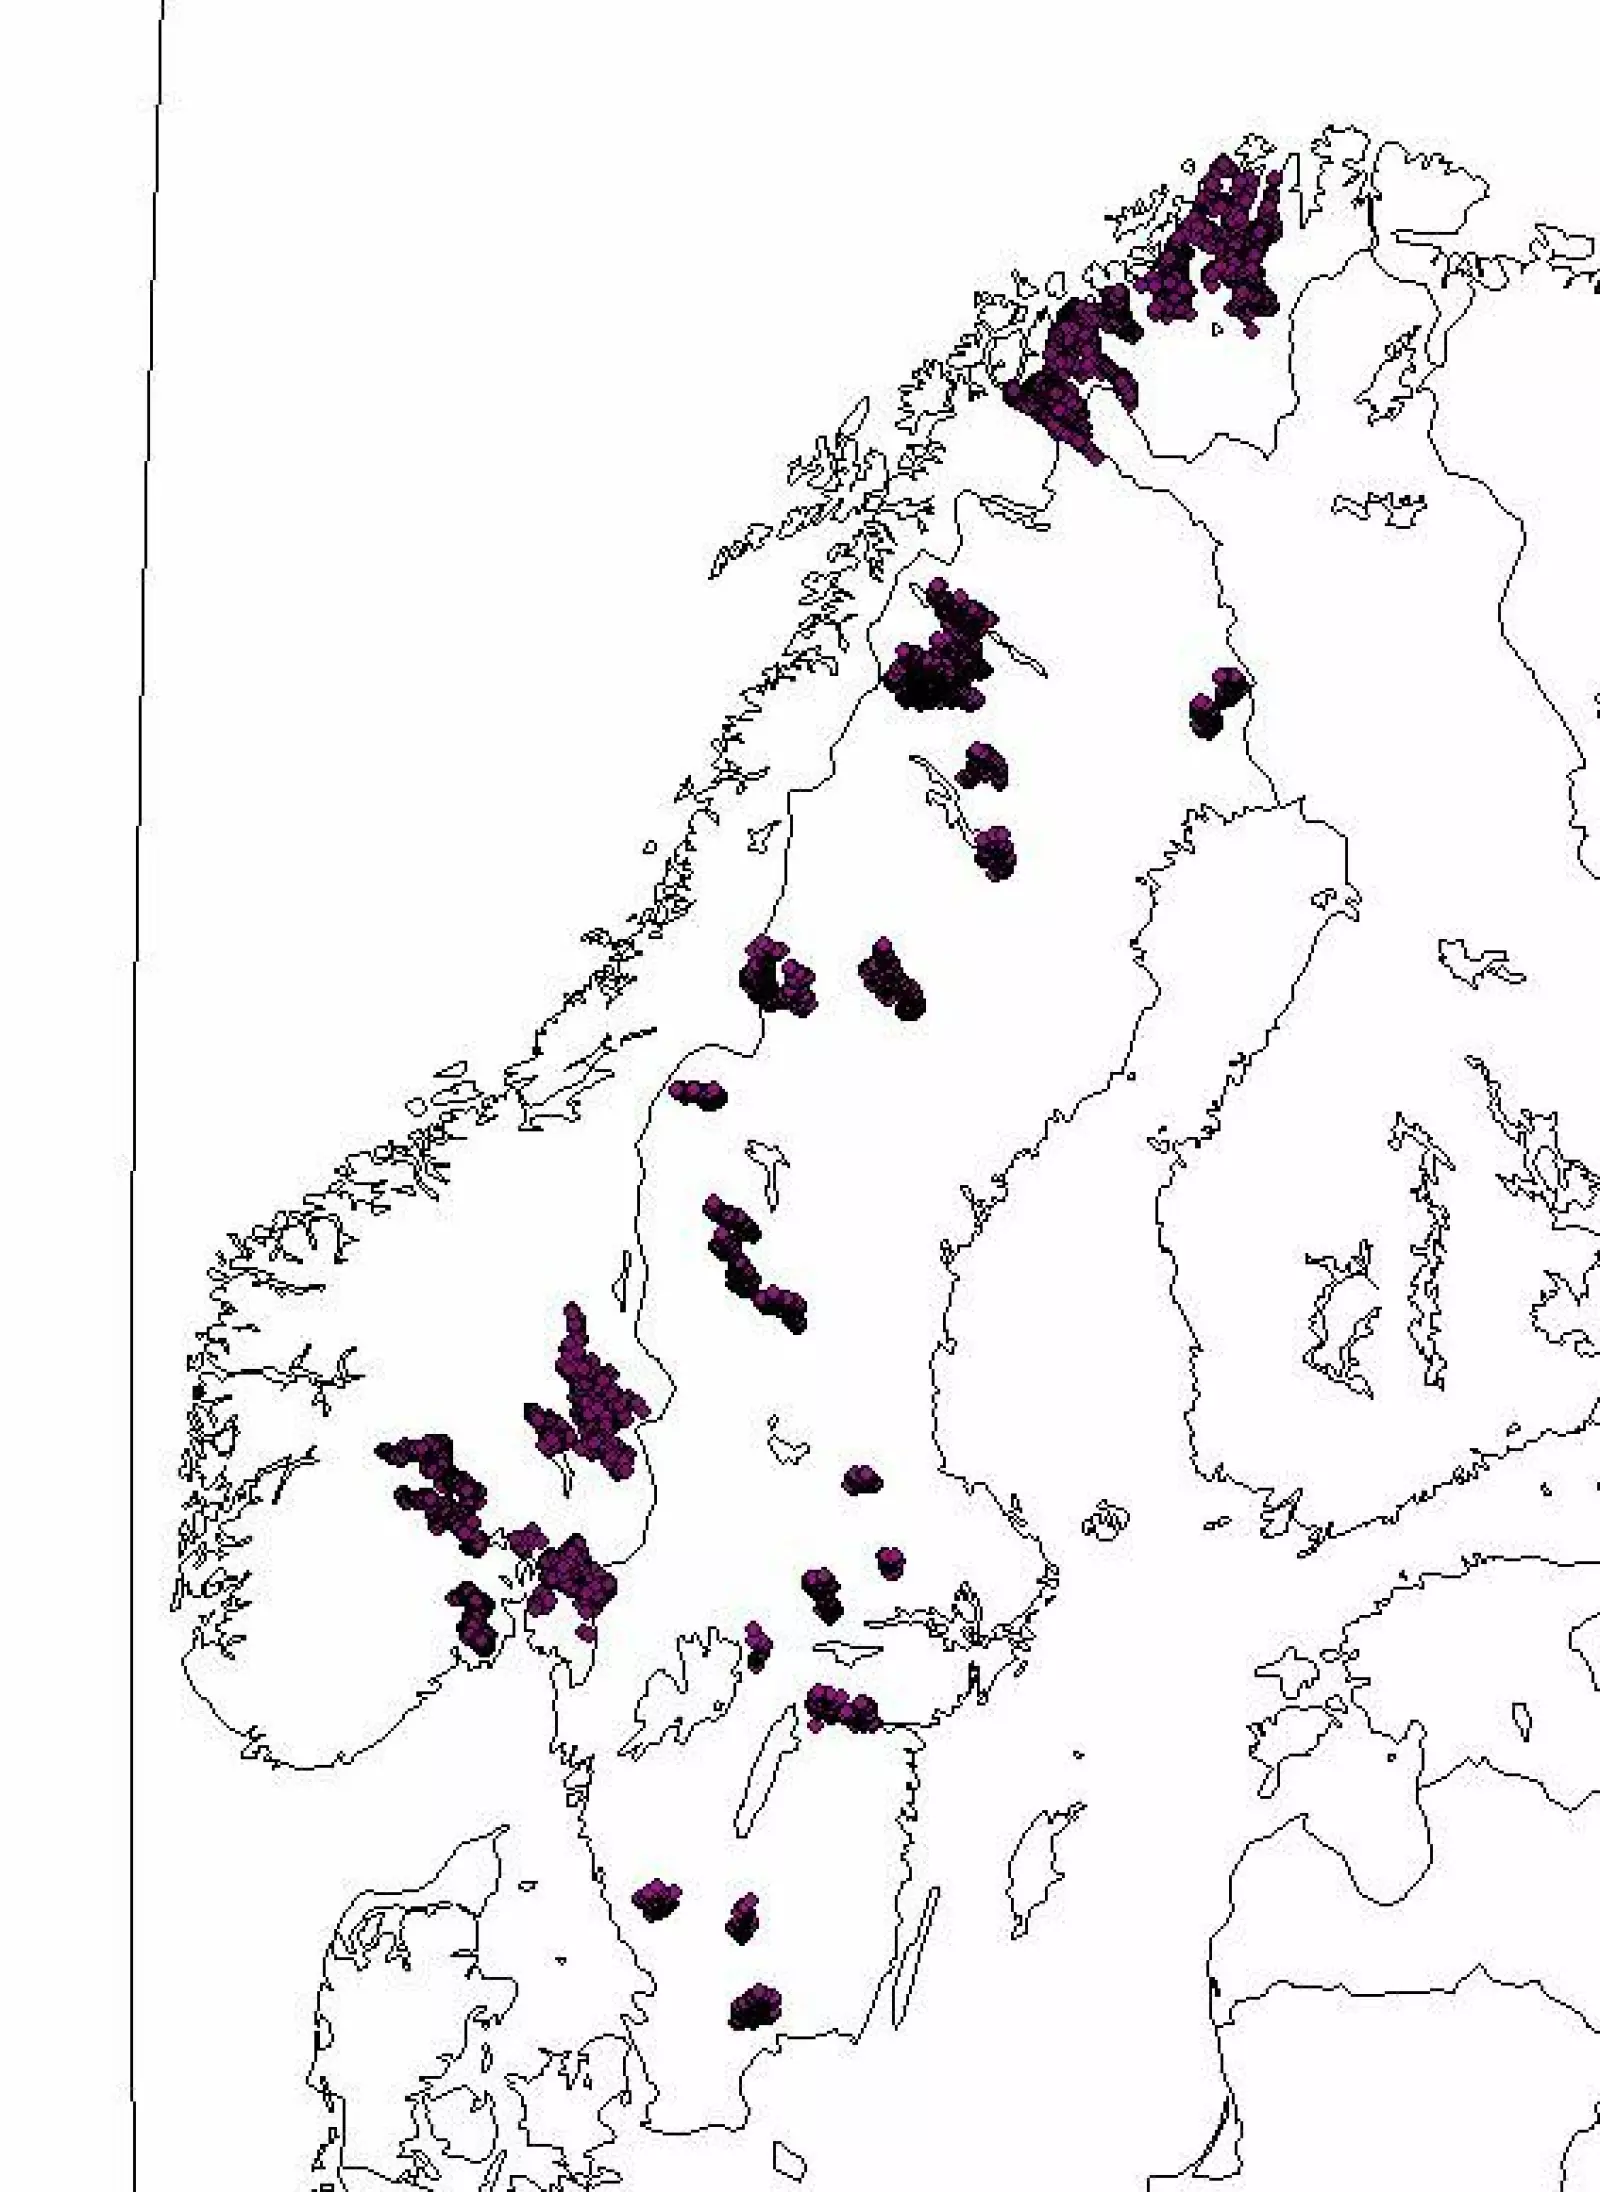 Kartene viser hvor vi fulgte hunngauper med radiosender (venstre) og hvordan ulike deler av Skandinavia har egne avstandsregler basert på tetthet av byttedyr (høyre).